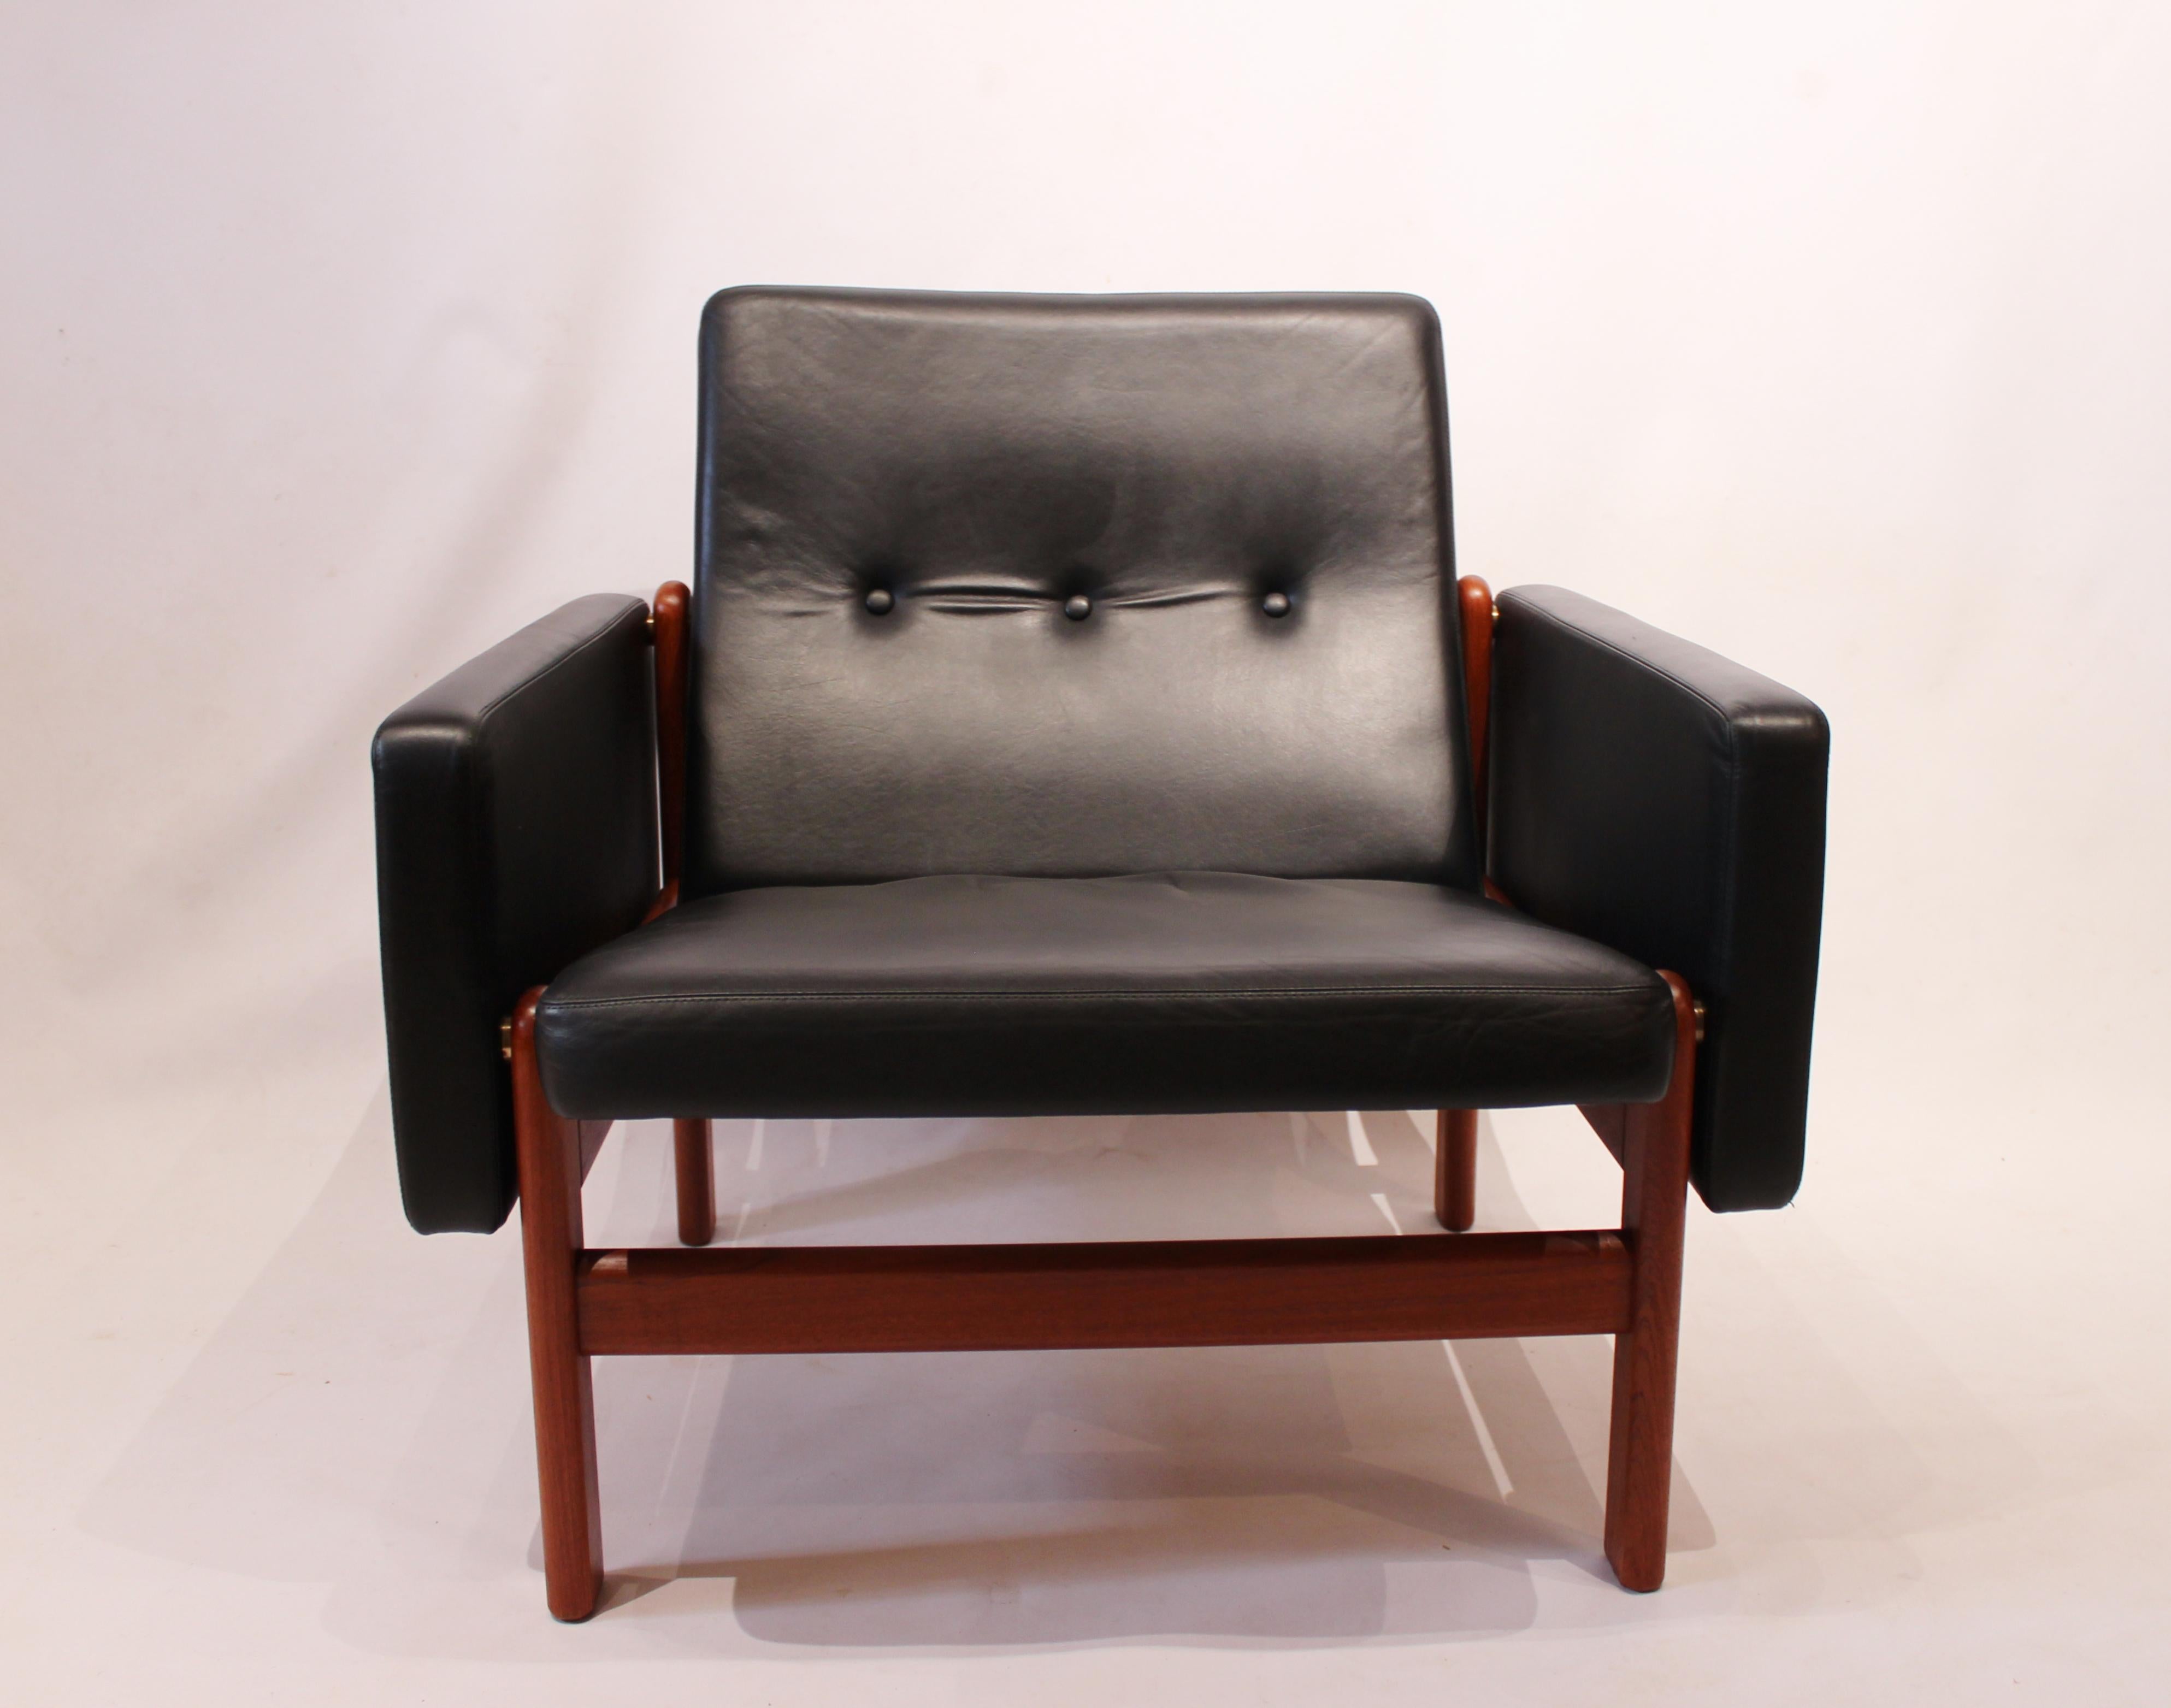 Sessel, Modell 65 23, mit Hocker, Modell 64 23, gepolstert mit schwarzem klassischem Leder und Gestell aus Teakholz. Der Stuhl und der Hocker wurden von Jørgen Bækmark entworfen und von FDB in den 1960er Jahren hergestellt und befinden sich in einem